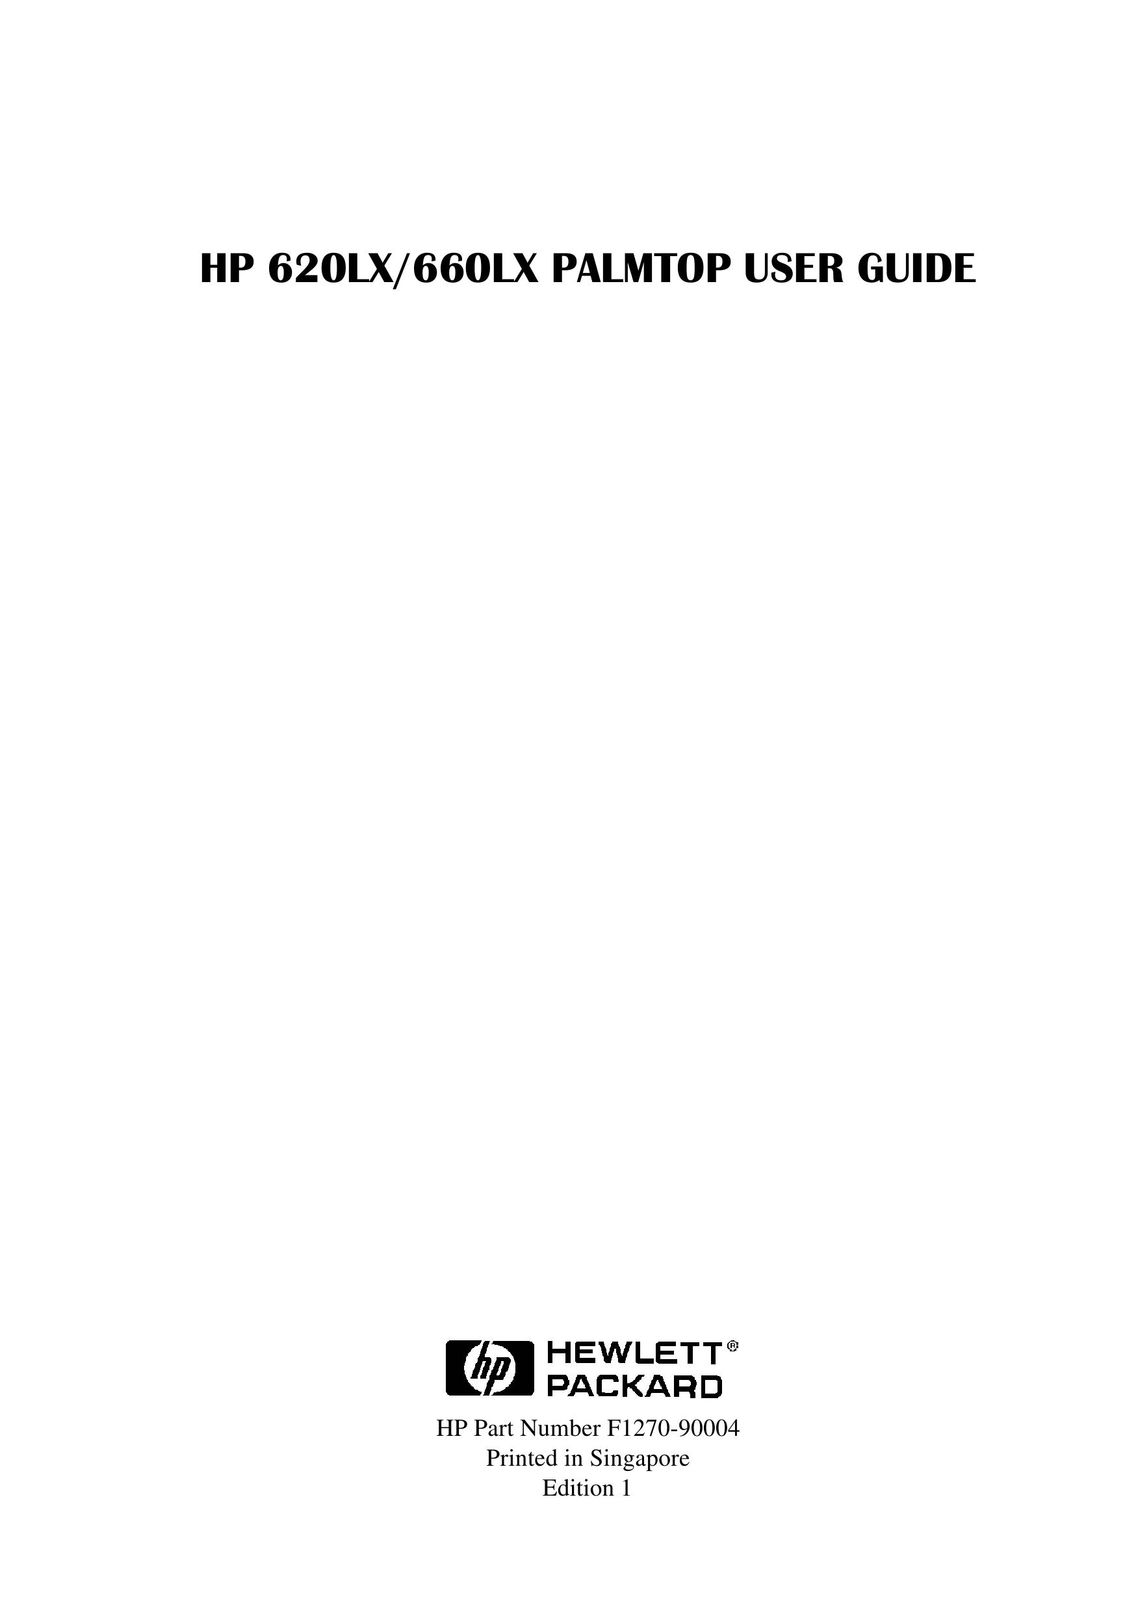 HP (Hewlett-Packard) 620LX PDAs & Smartphones User Manual